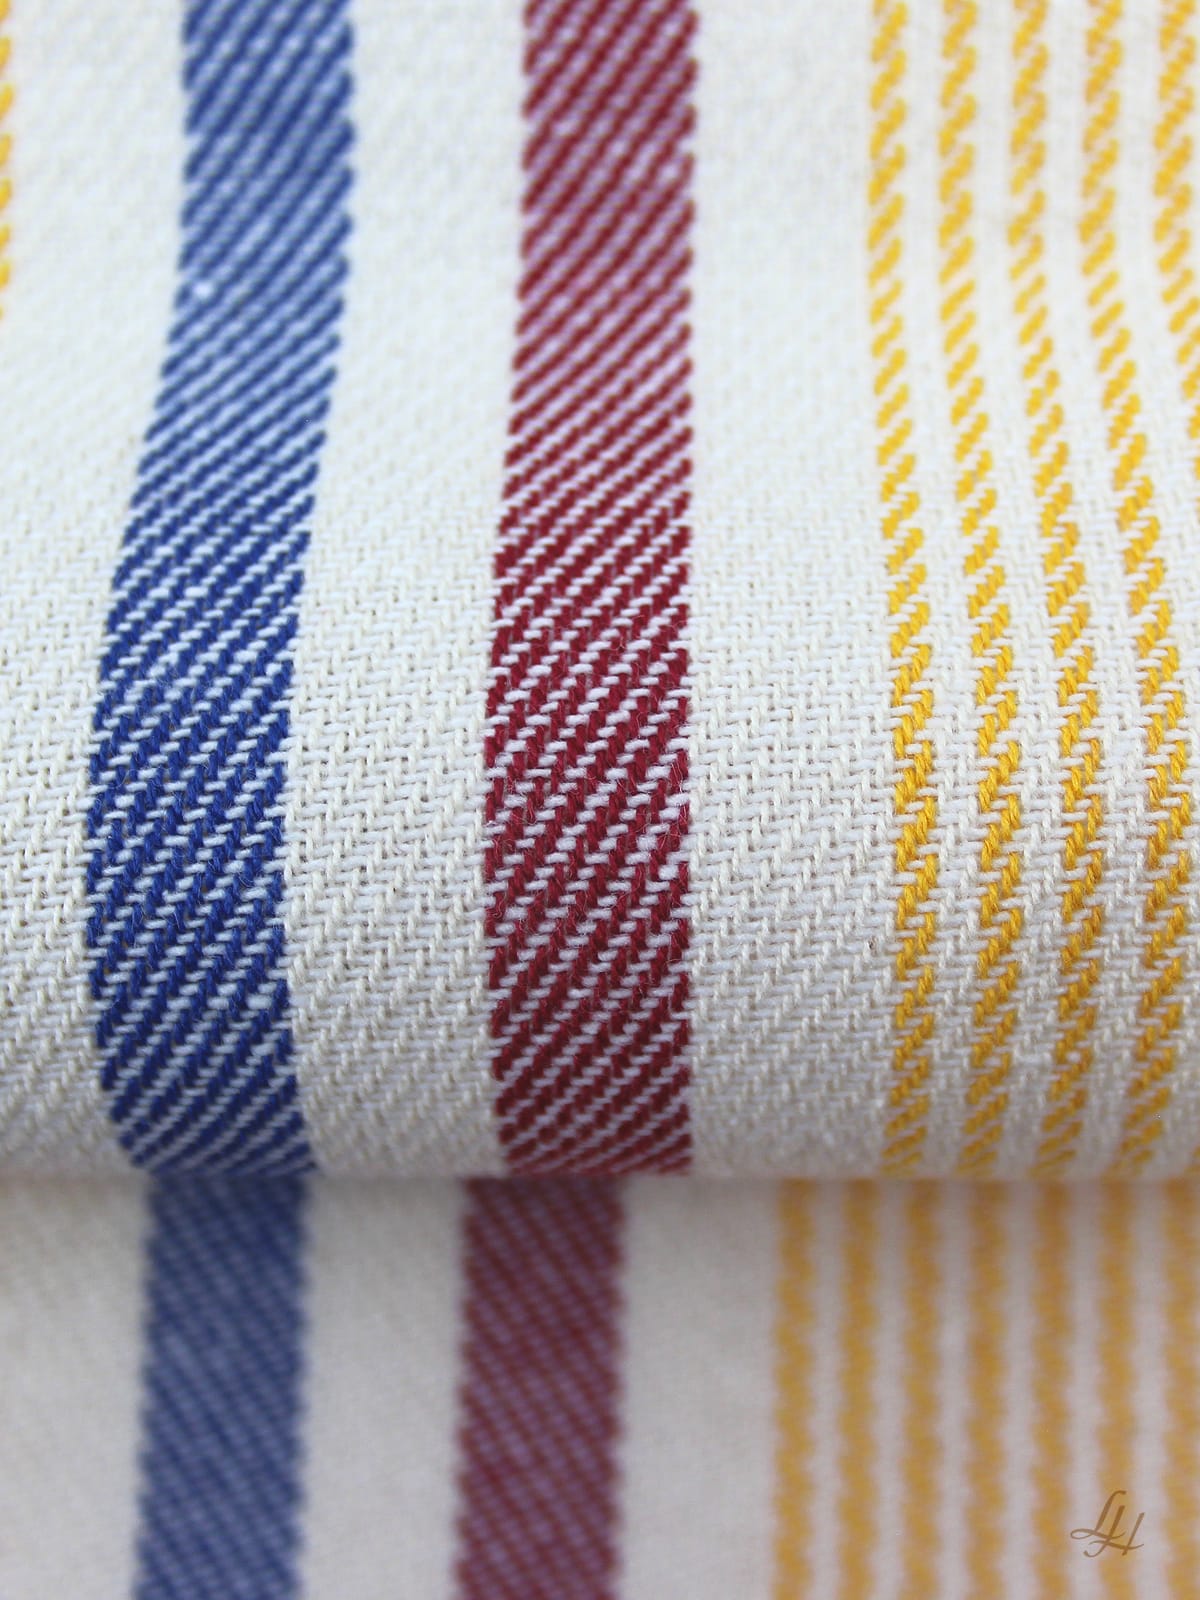 Küchentuch aus Baumwolle mit bunte Streifen im Detail